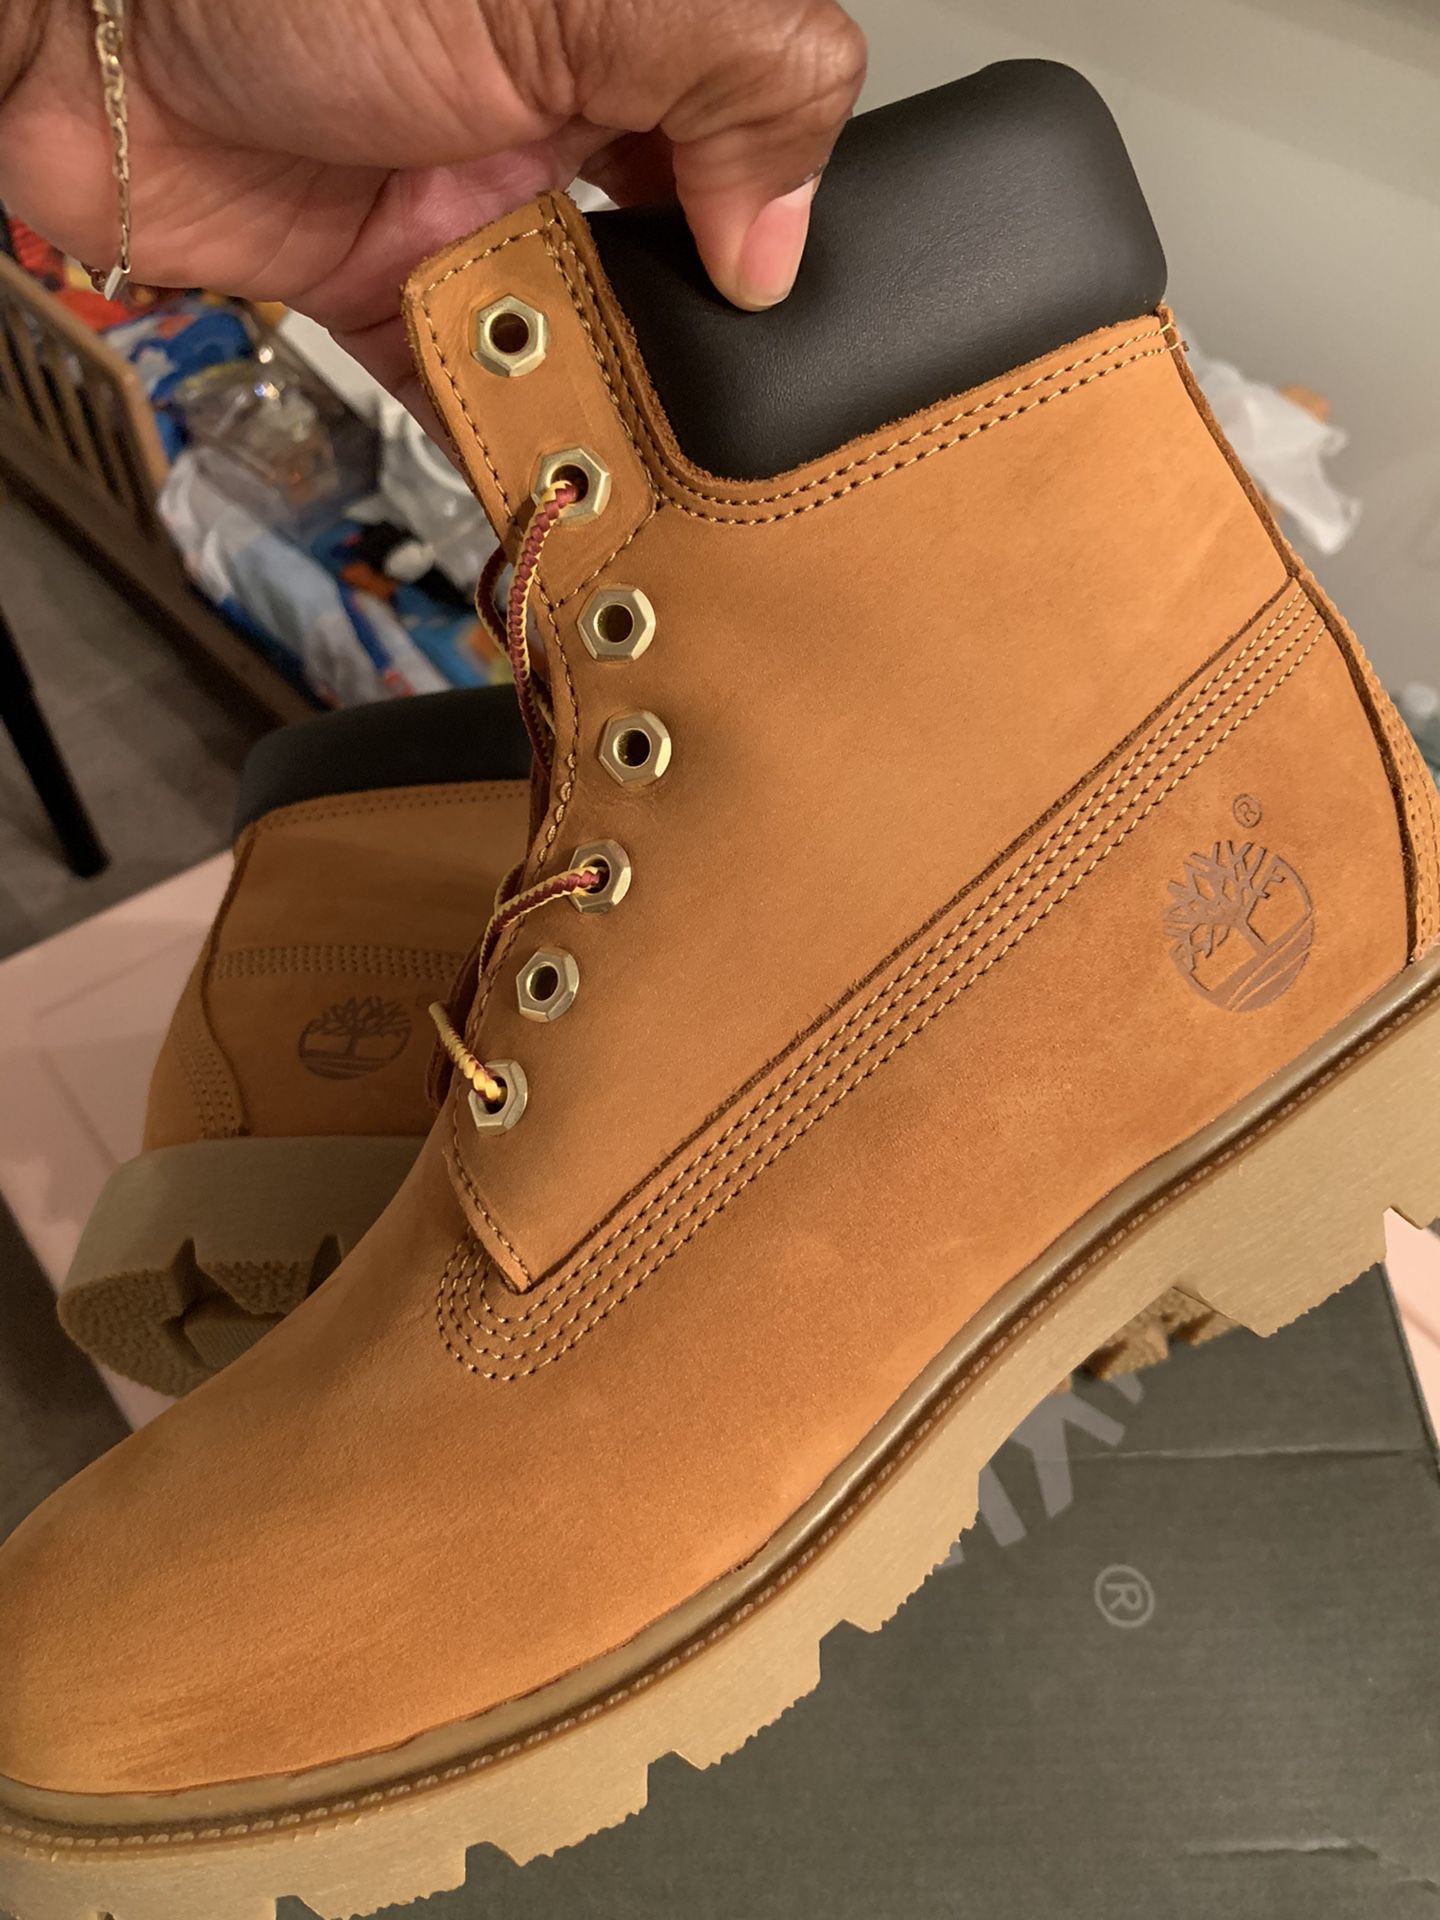 Timberland Boots size 8 men’s ( women 9.5)